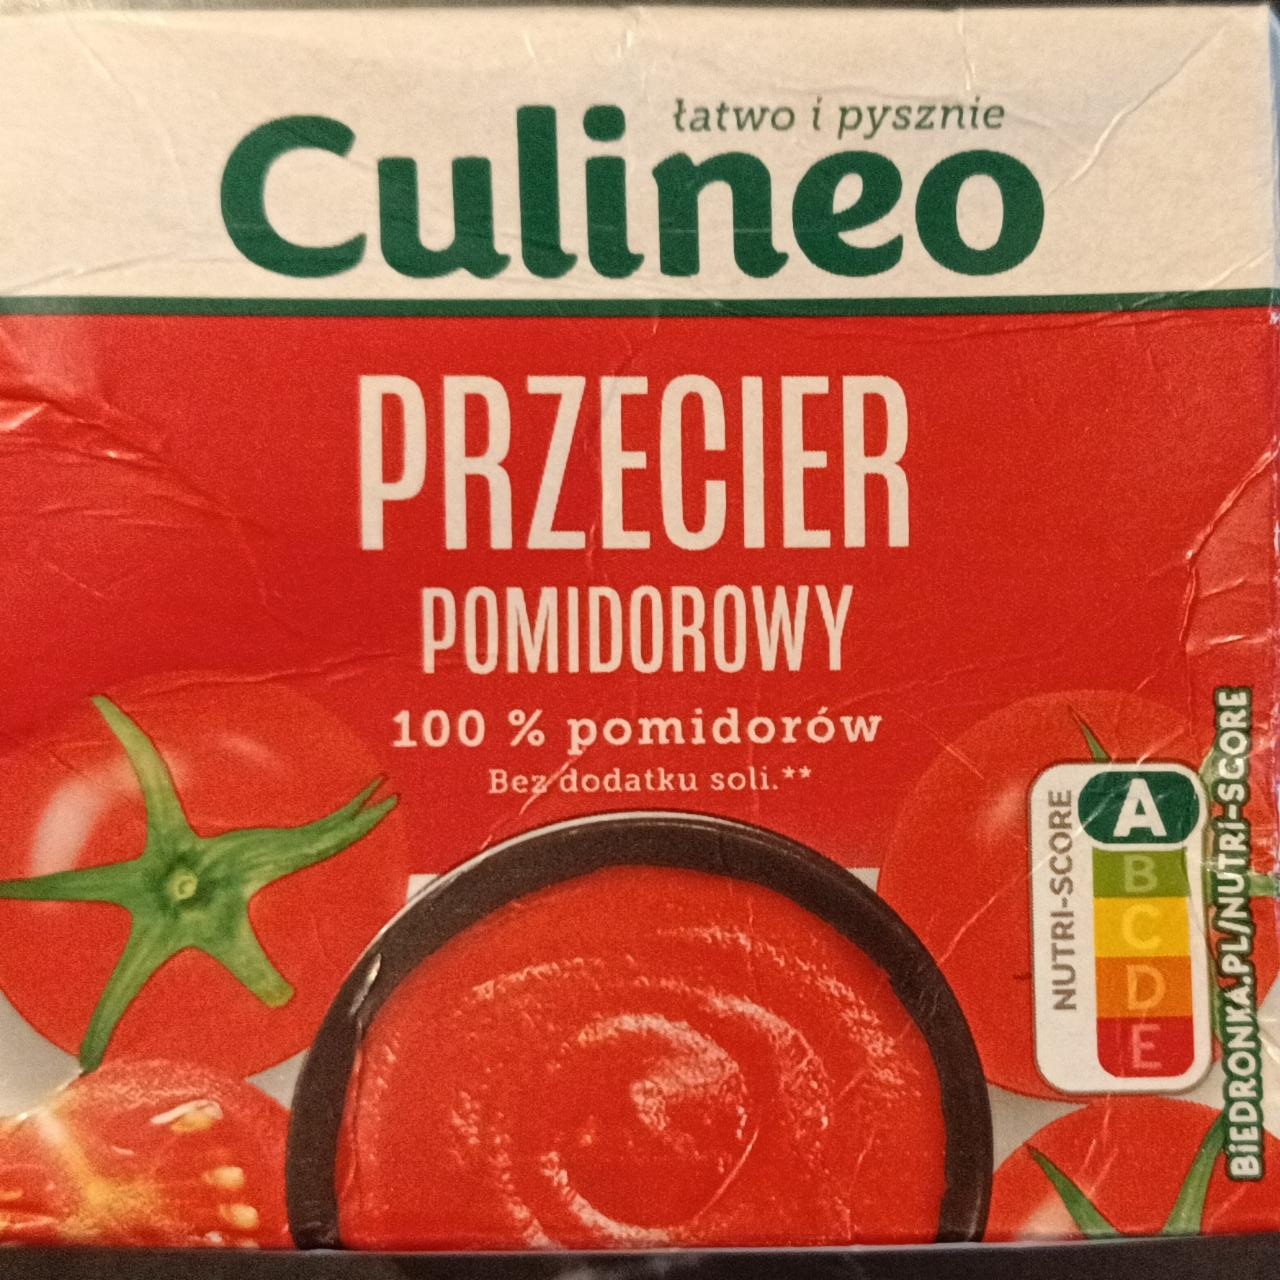 Zdjęcia - Przecier pomidorowy Culineo